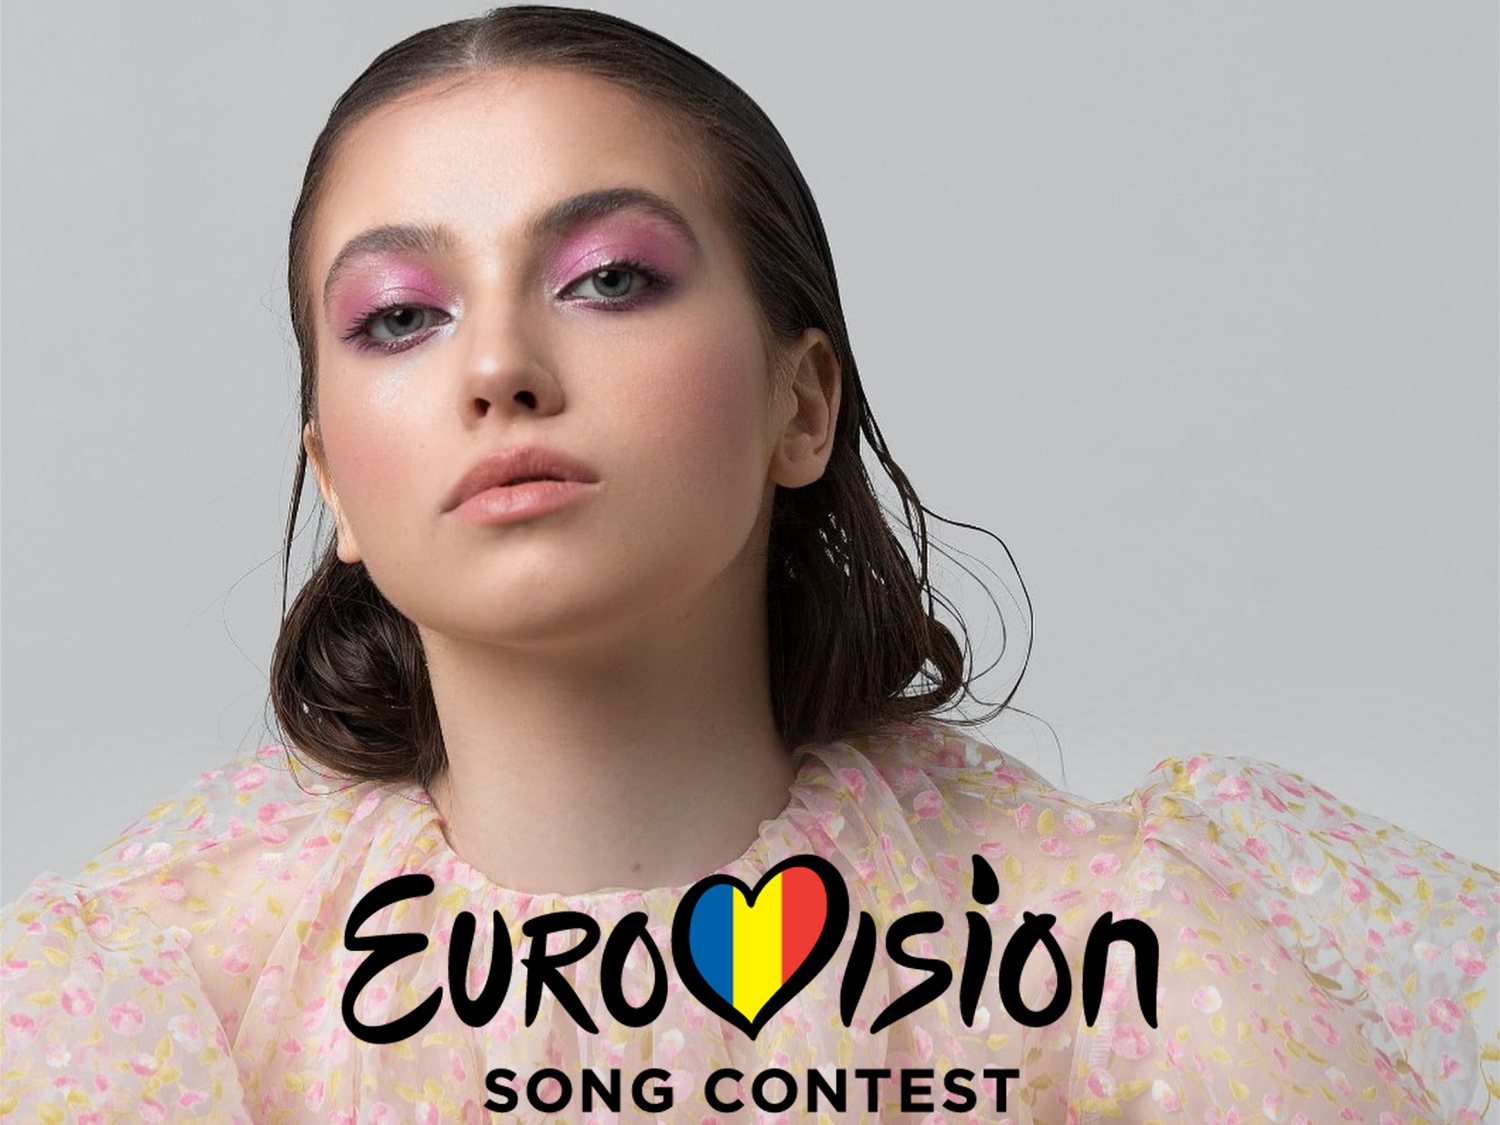 Roxen representará a Rumanía en Eurovisión 2020 tras su primera selección interna